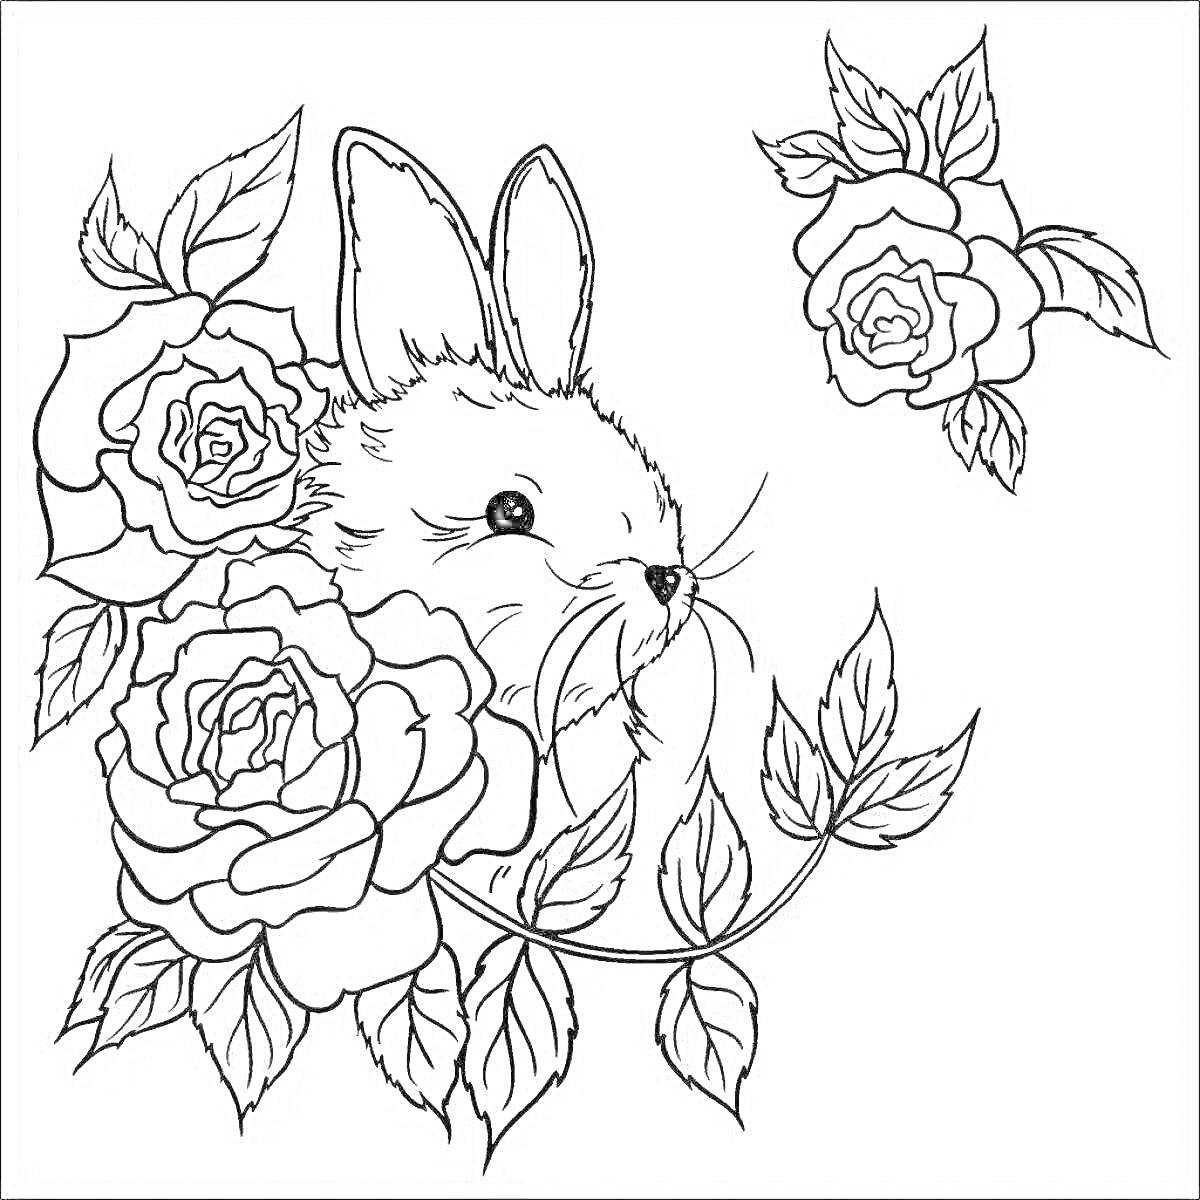 Раскраска Кролик среди роз, две большие розы слева и одна роза справа